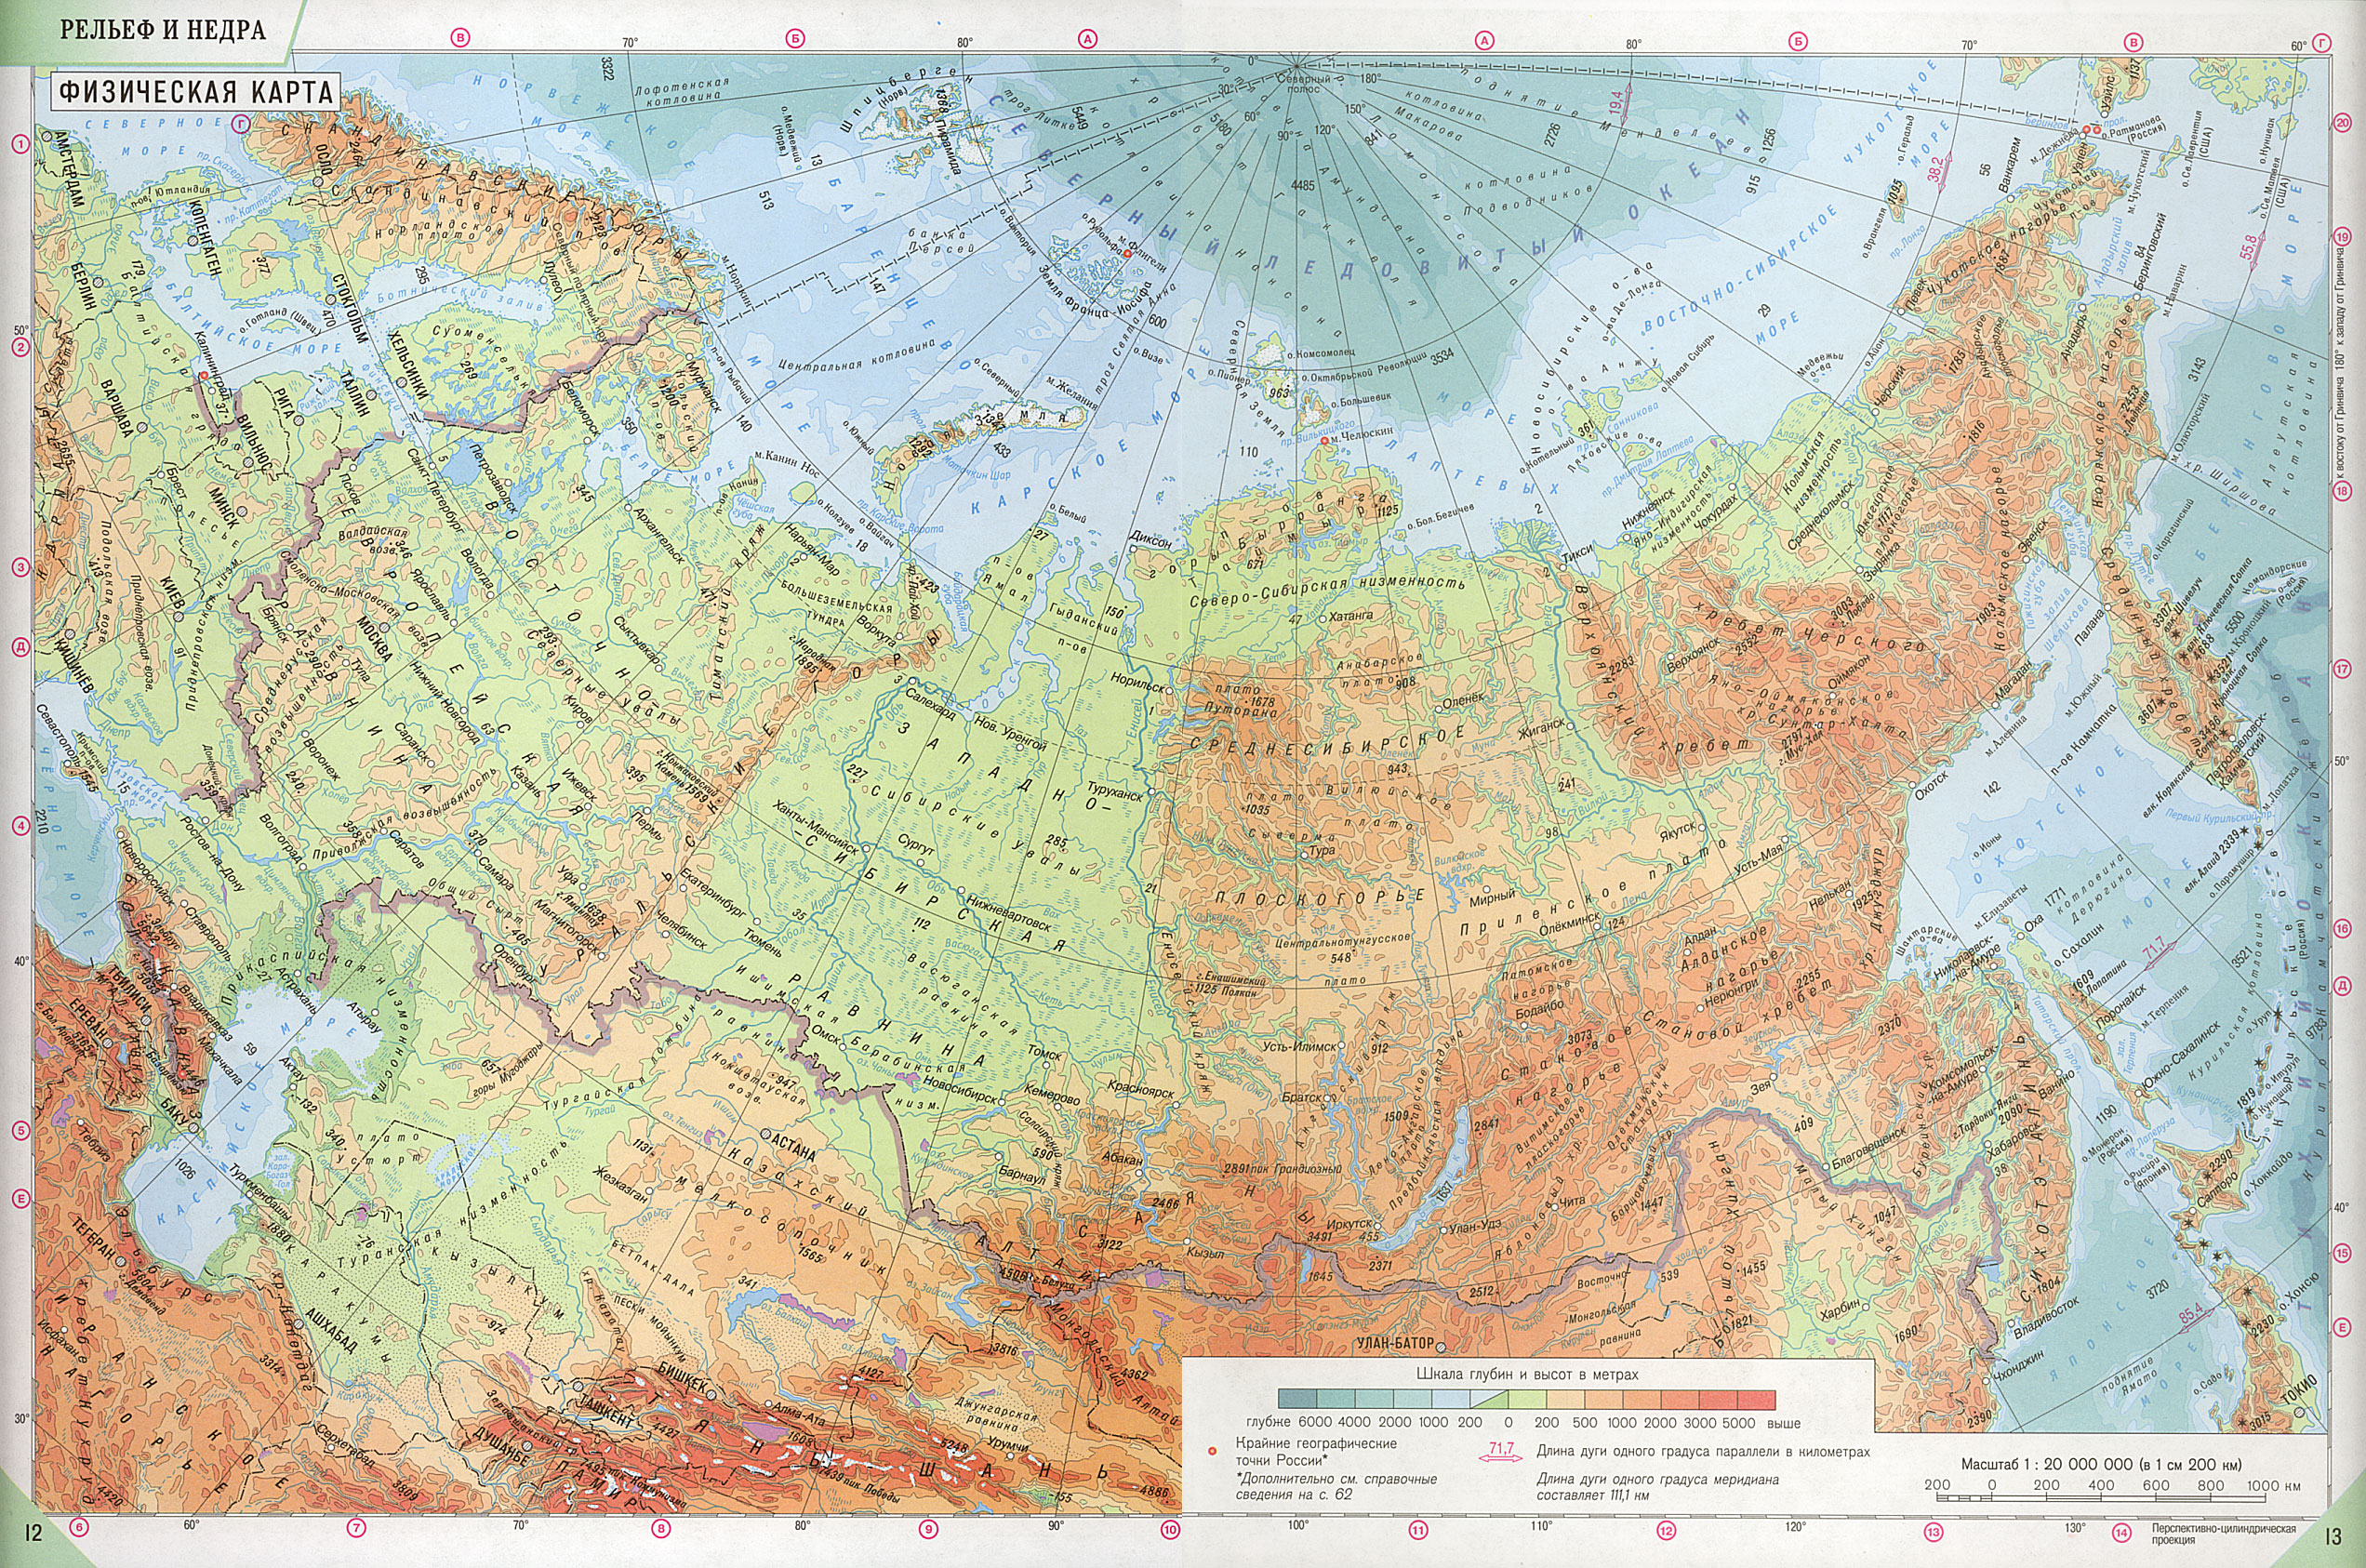 Политическая карта россии по истории 10 класс контурная с полуостарвами реками океанами островами